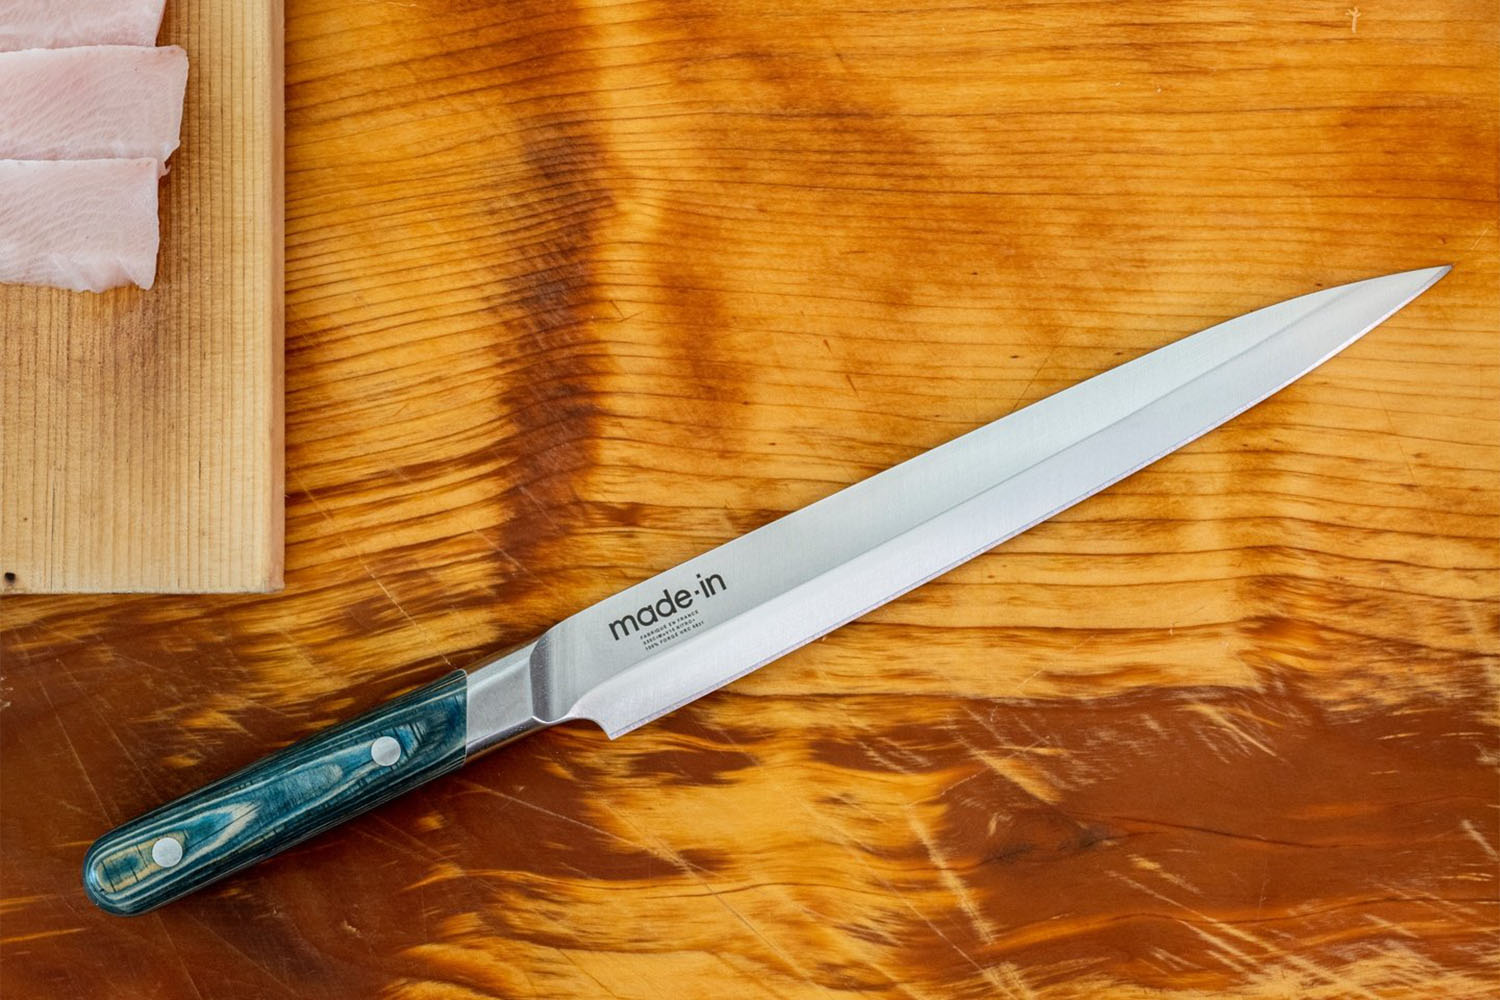 a knife on a cutting board